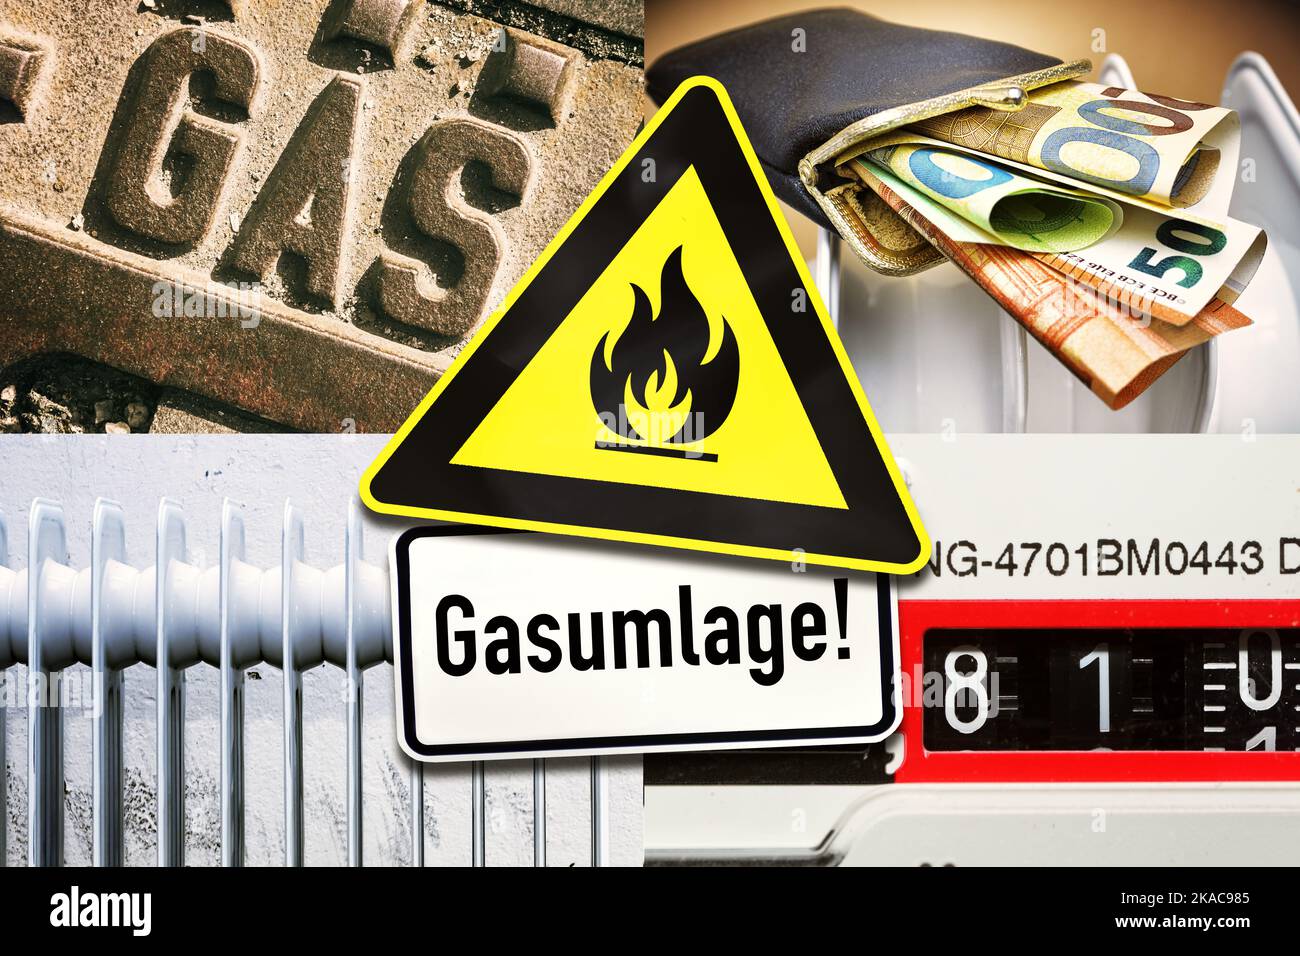 FOTOMONTAGE, Warnschild Gasumlage vor Gaszähler, Gasanschluss, Heizkörper und Portmonee mit Geldscheinen Stock Photo